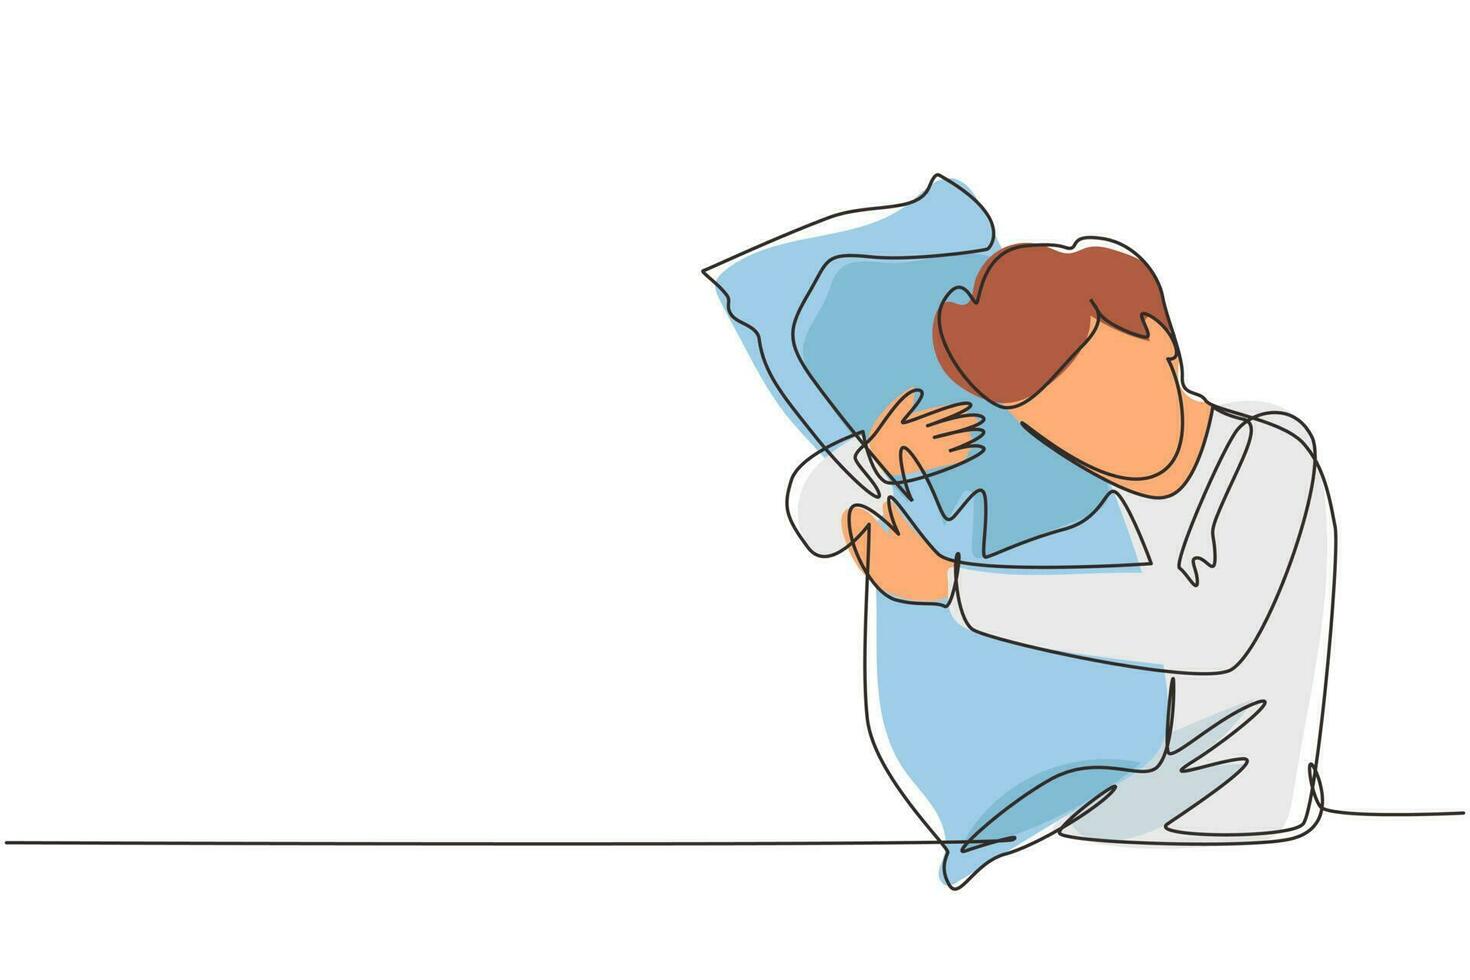 una sola línea continua dibujando a un hombre durmiendo mientras abraza una almohada. actividades de las personas. dulce sueño o concepto de sueño. el hombre tomó una pastilla para dormir para el insomnio. ilustración de vector de diseño de dibujo de una línea